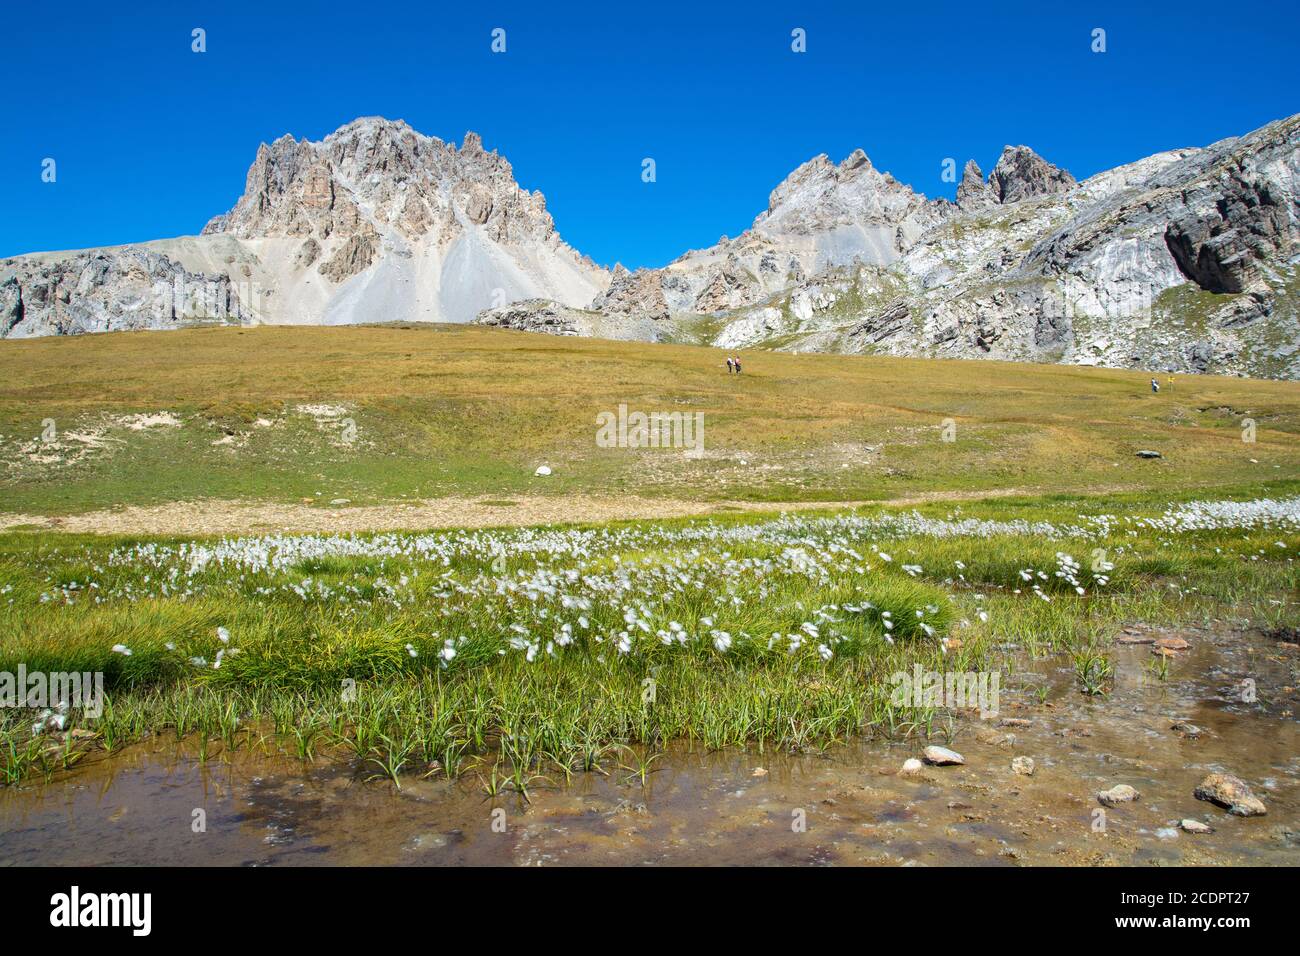 Trekking auf alpinen Pfaden, zwischen Seen von seltener Schönheit und unberührten Gipfeln Stockfoto